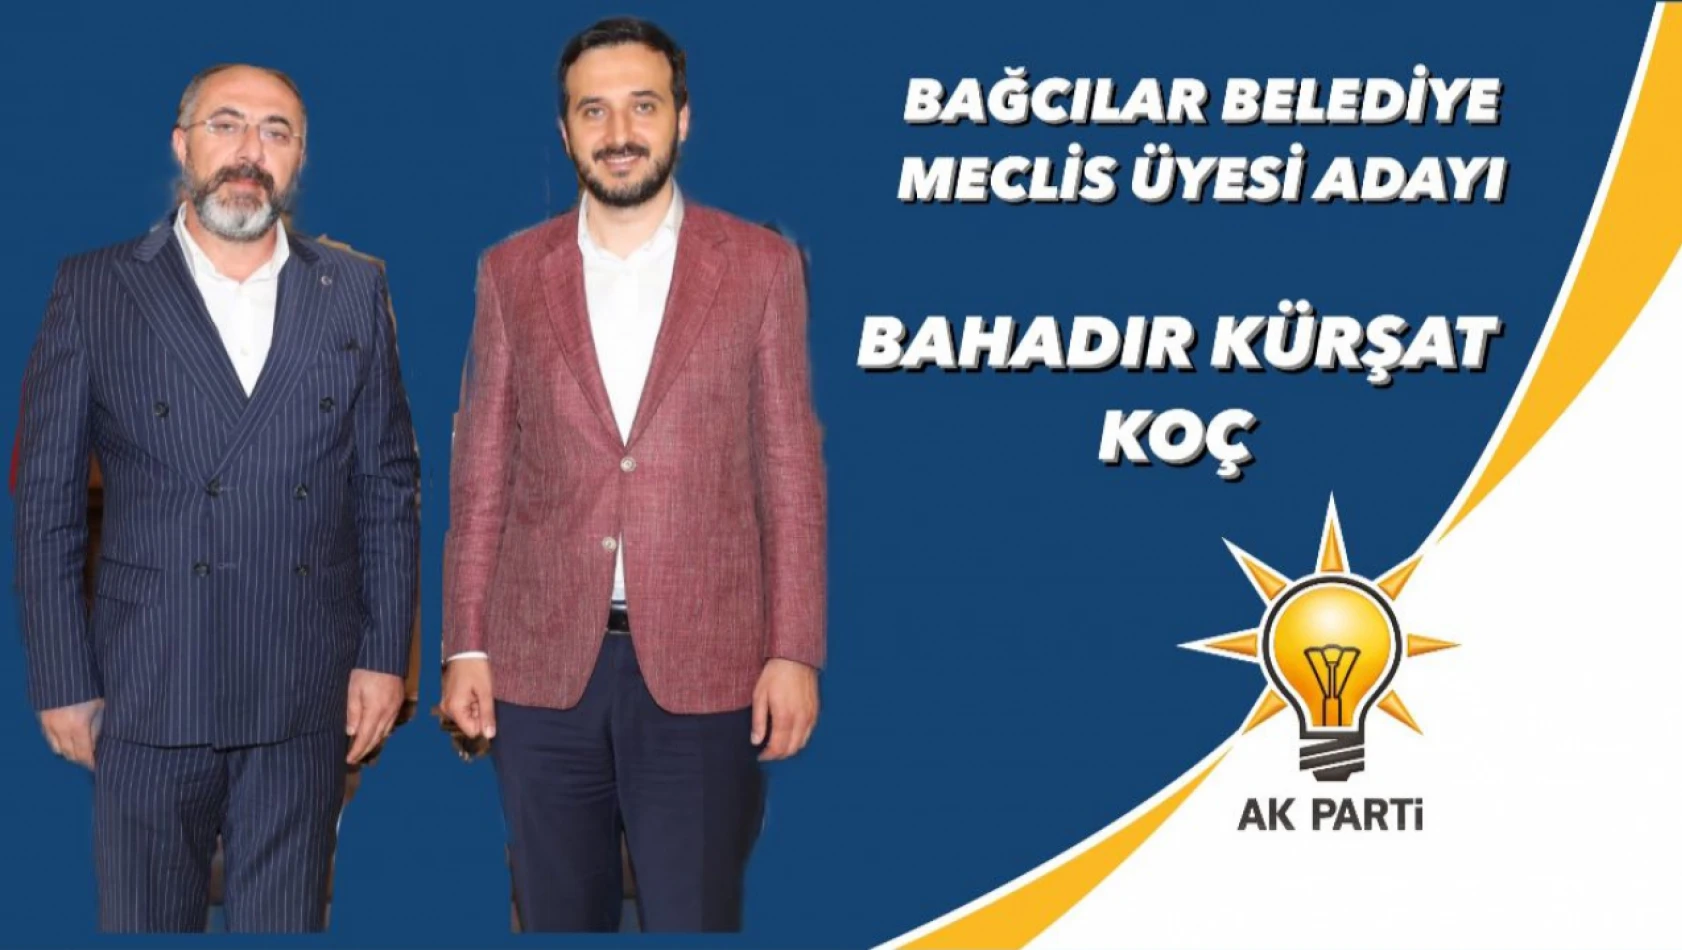 AK Parti Bağcılar belediye meclis üyesi aday listesinde Elazığlı isim